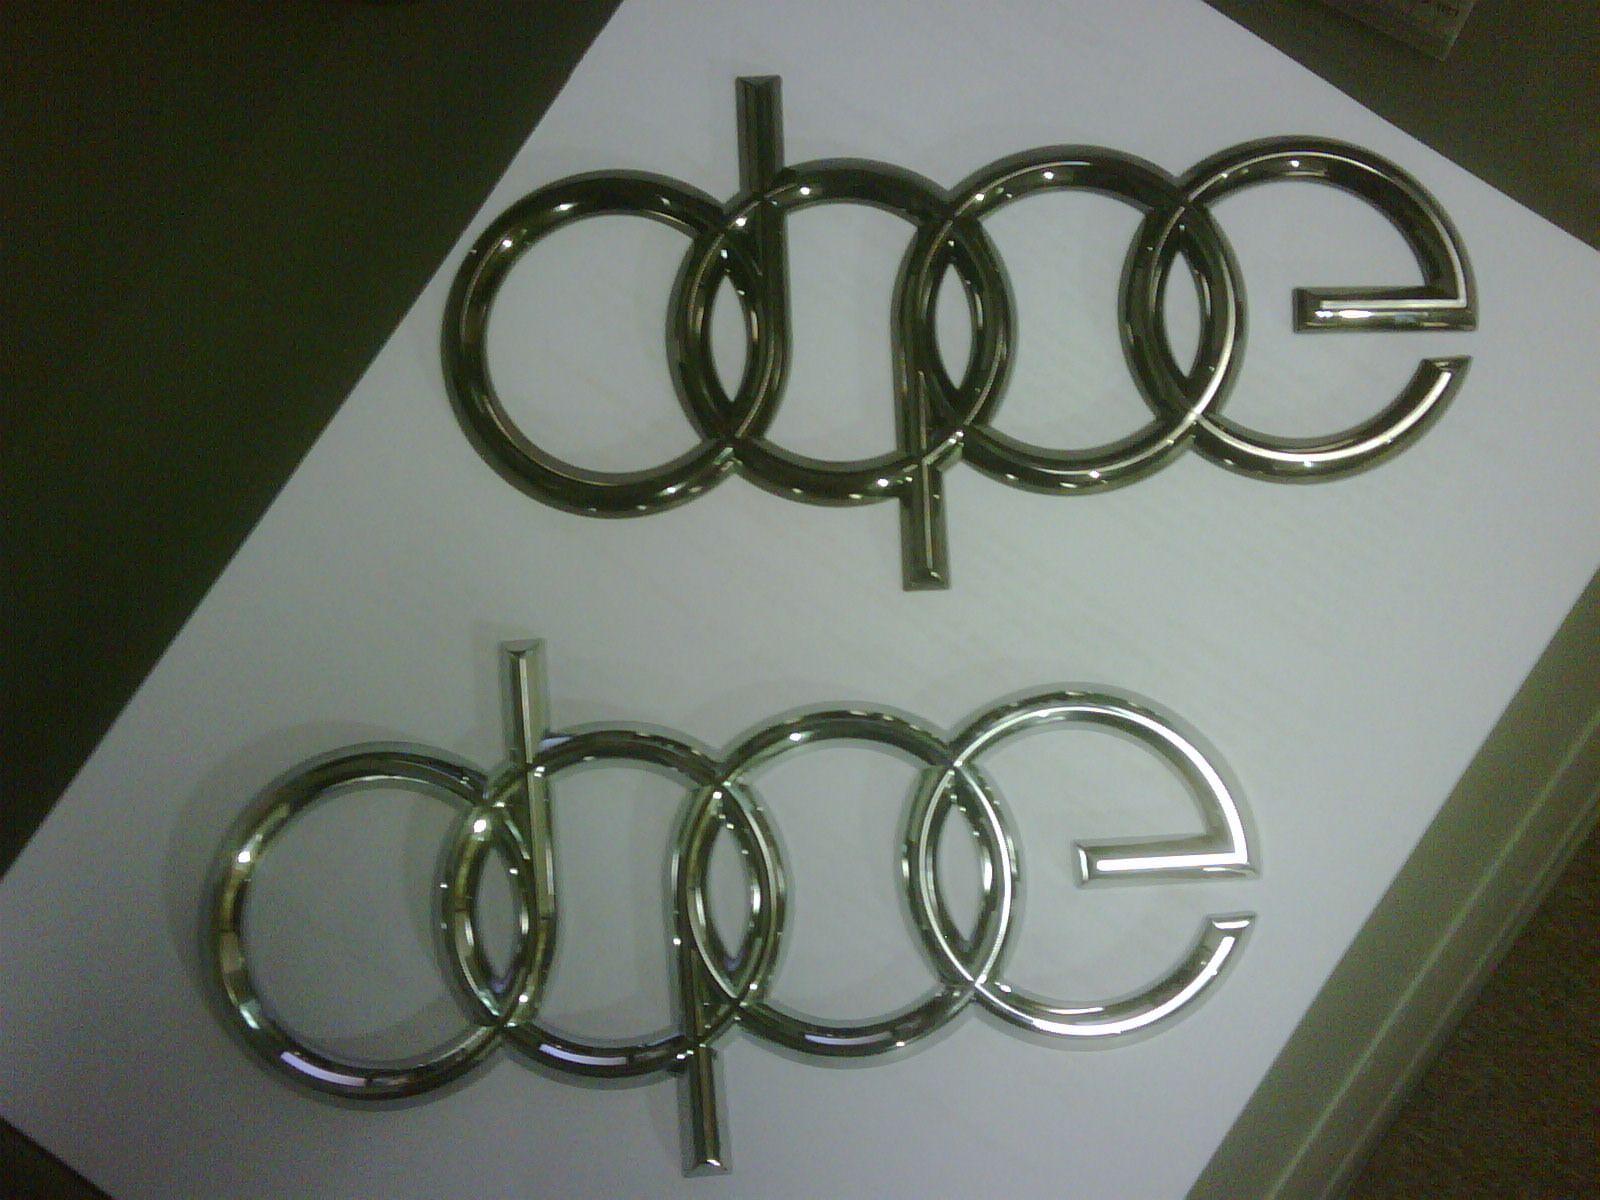 Audi Dope Logo - EBAY Find Dope Emblem's